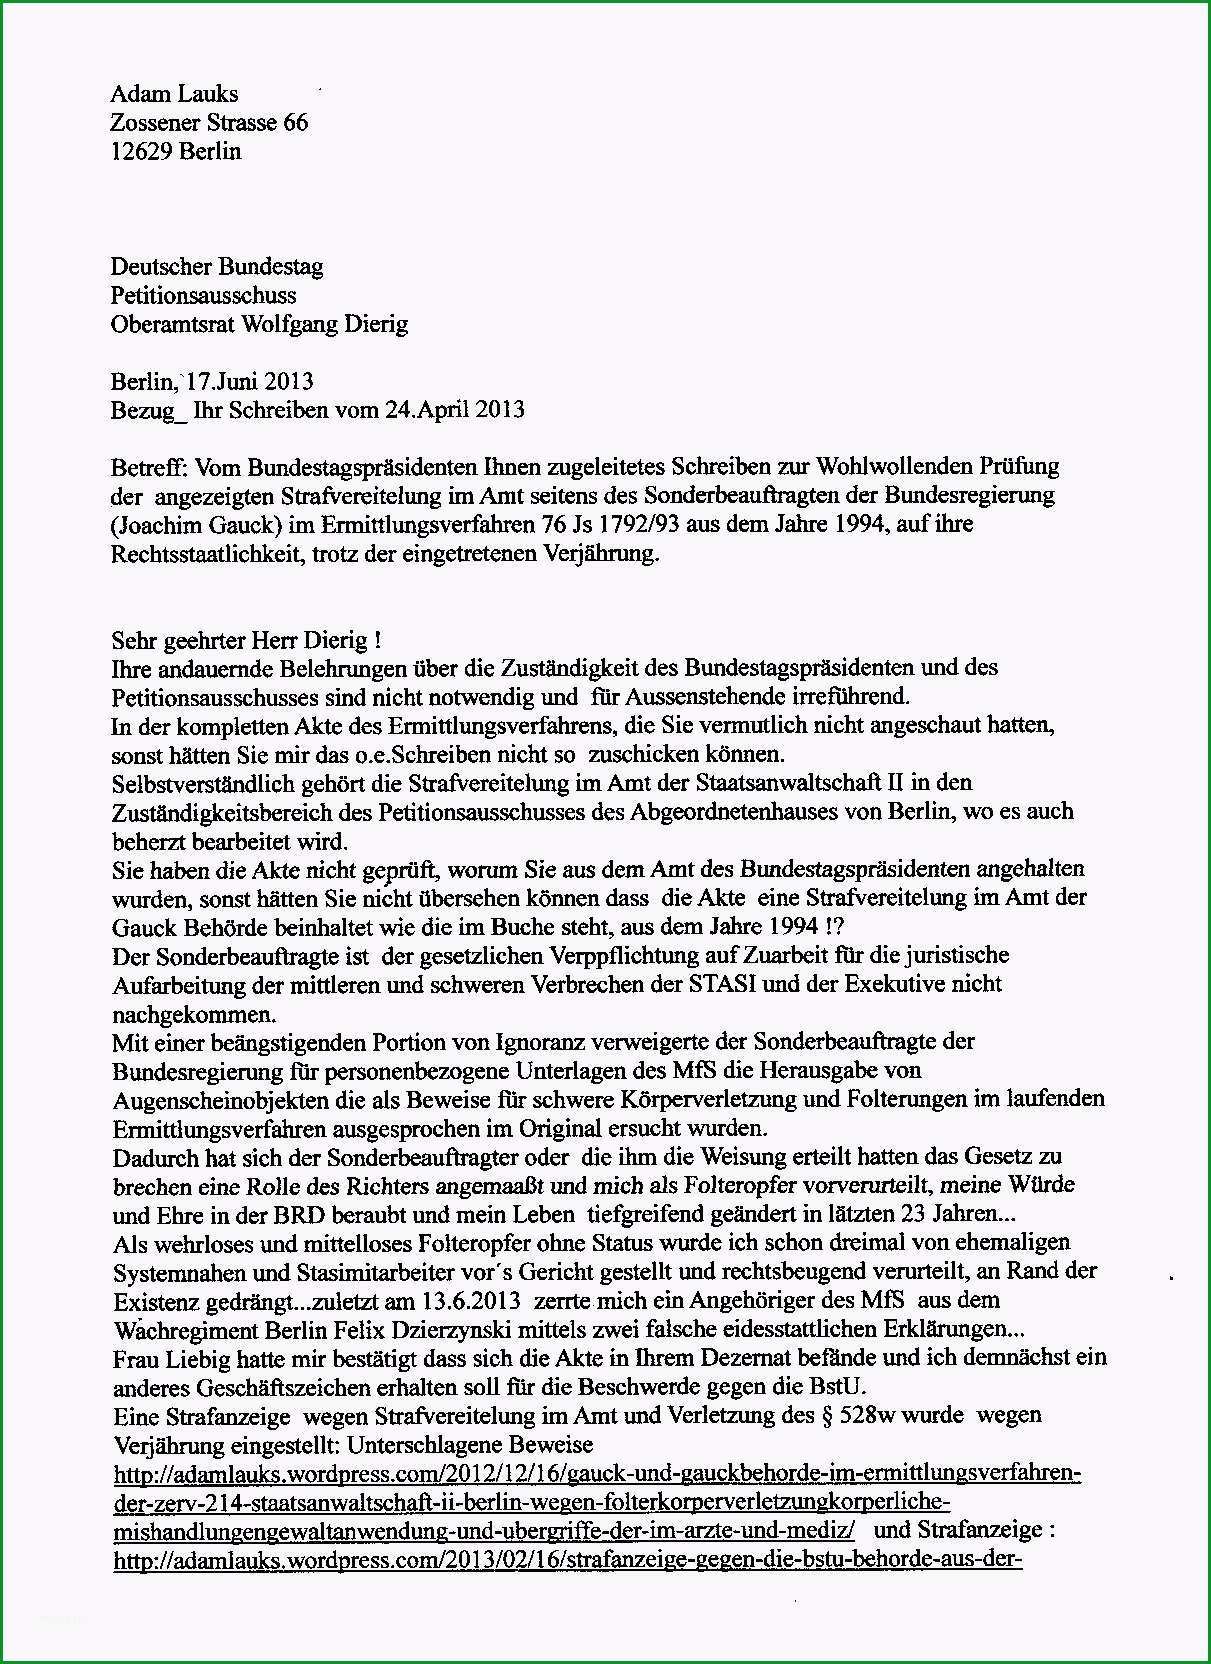 petitionsausschuss des deutschen bundestages und strafvereitelung im amt des sonderbeauftragten fur personenbezogenen unterlagen der staatssicherheit der ddr